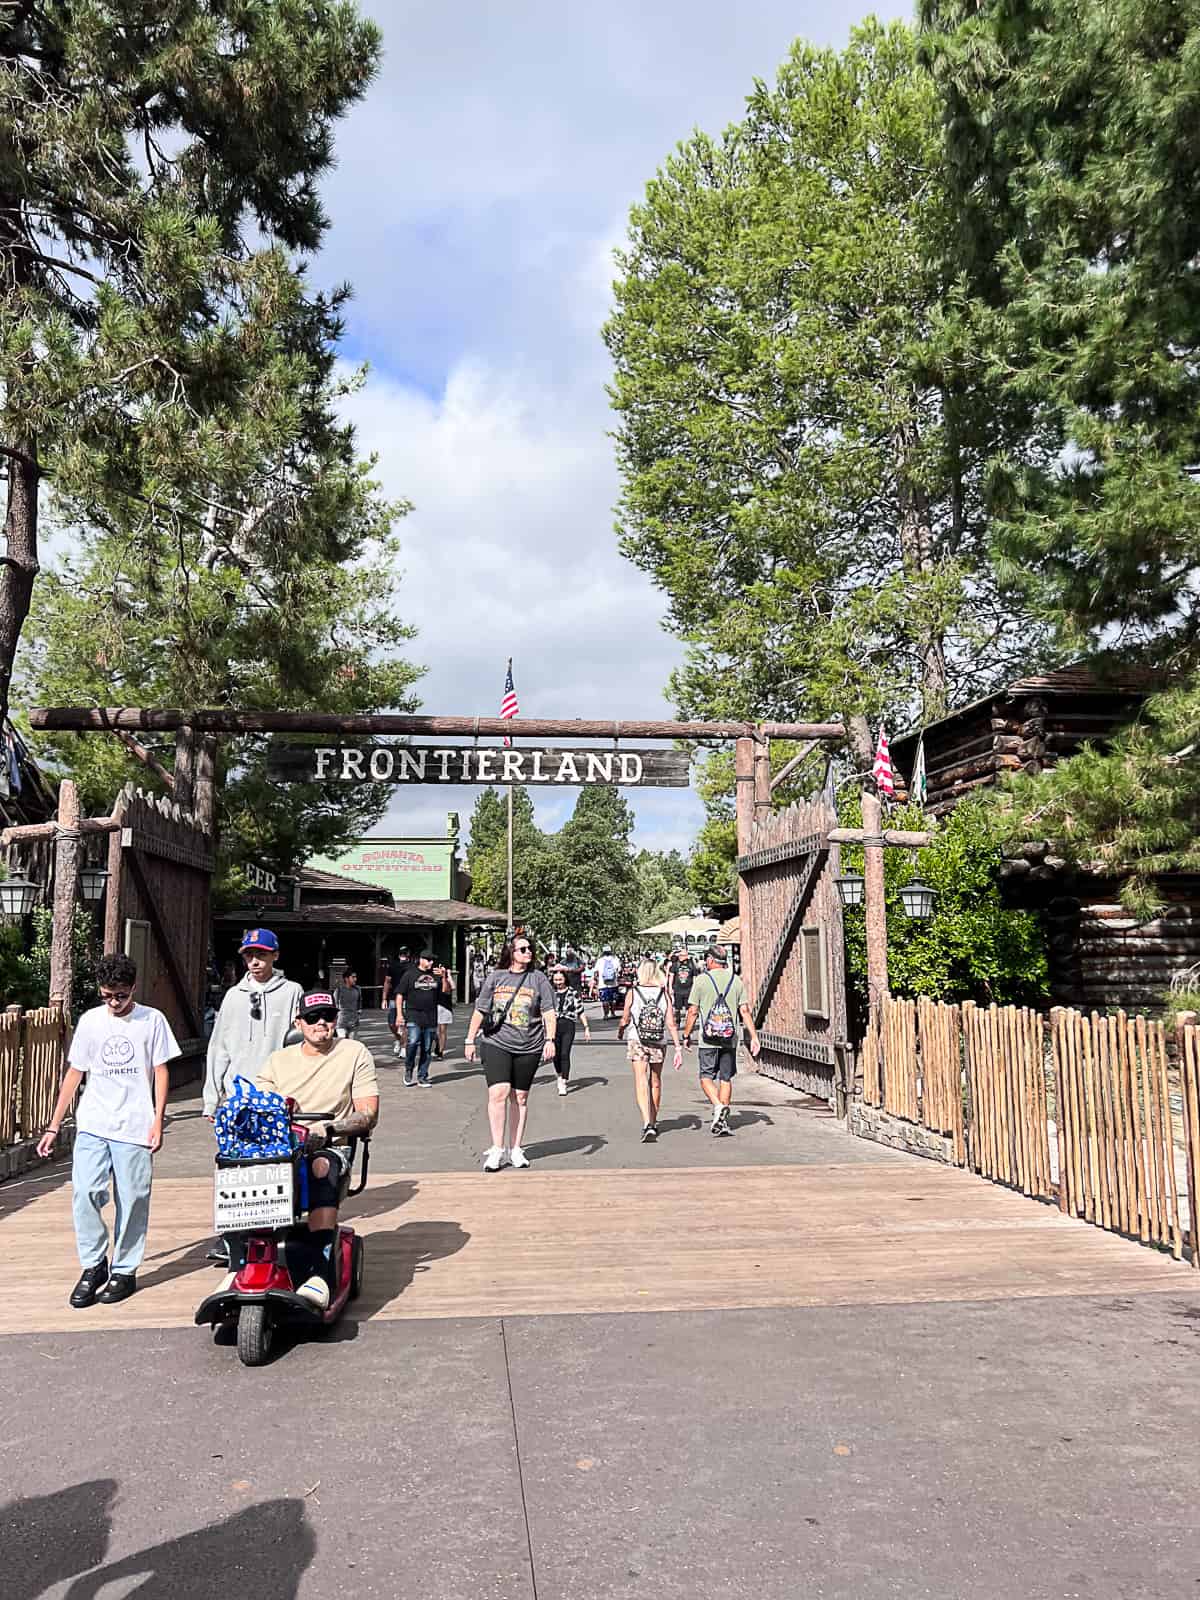 Fronteirland entrance view at Disneyland Park Anaheim